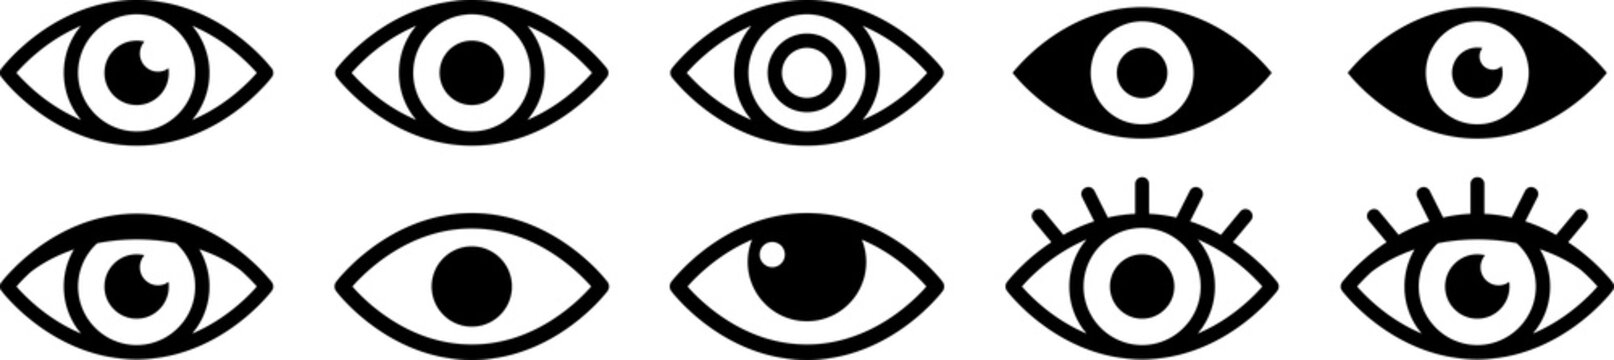 eye icon set. eyesight symbol. retina scan eye icons. simple eyes collection. eye silhouette. png im